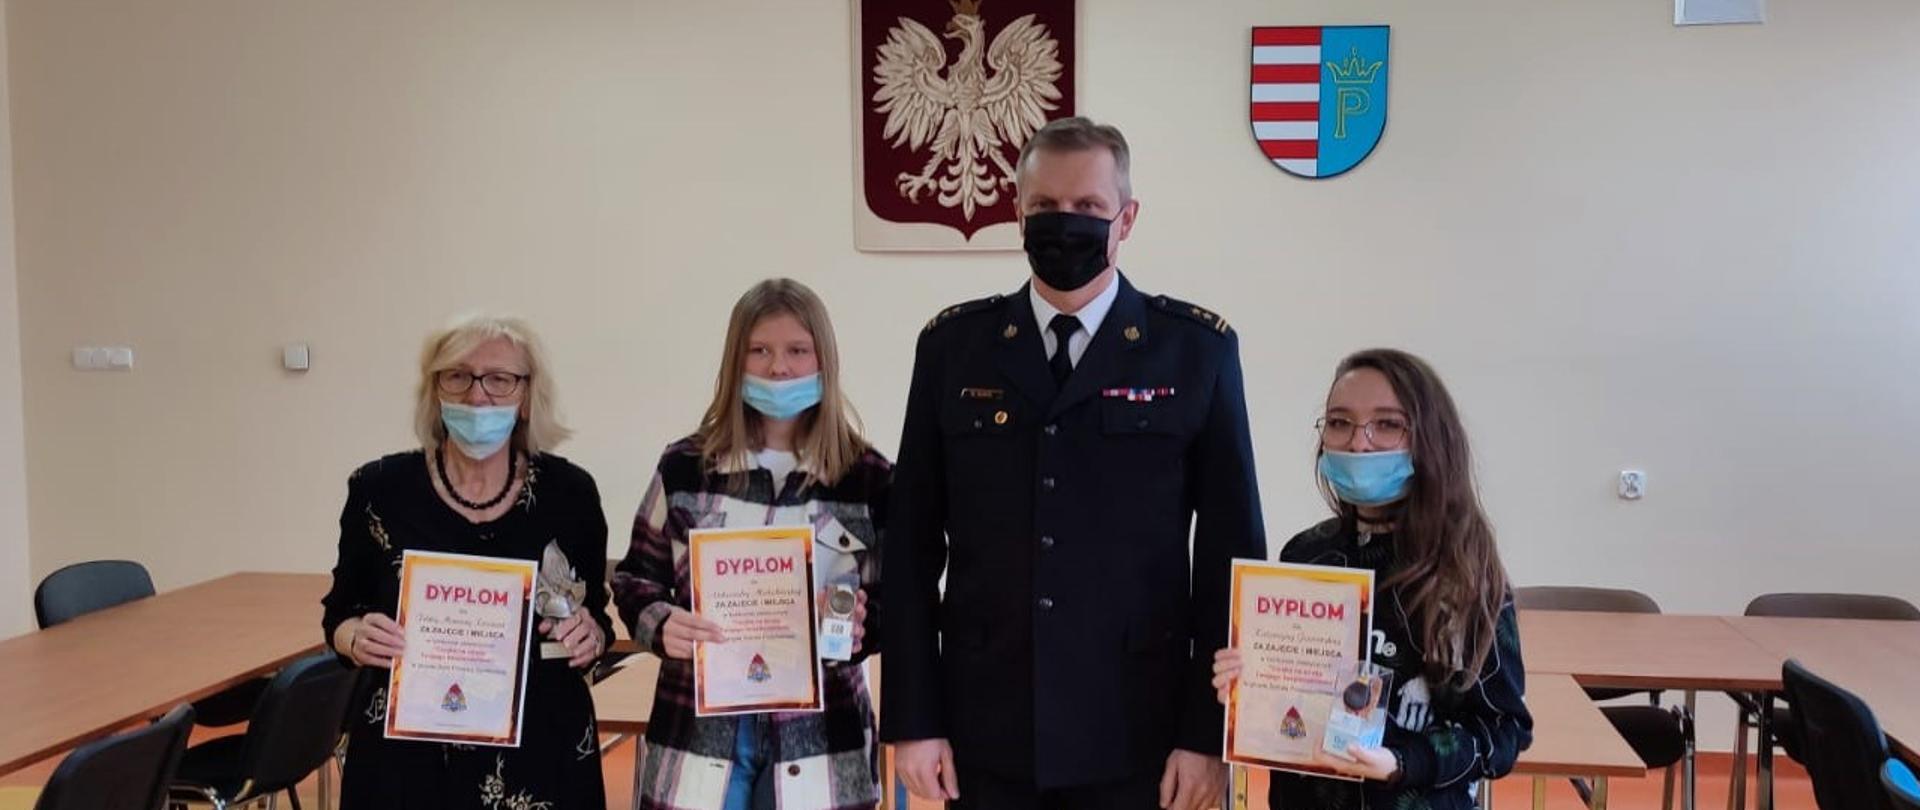 Laureaci konkursu po wręczeniu nagród z Komendantem Powiatowym PSP w Przysusze - bryg. Marcinem Sokołem